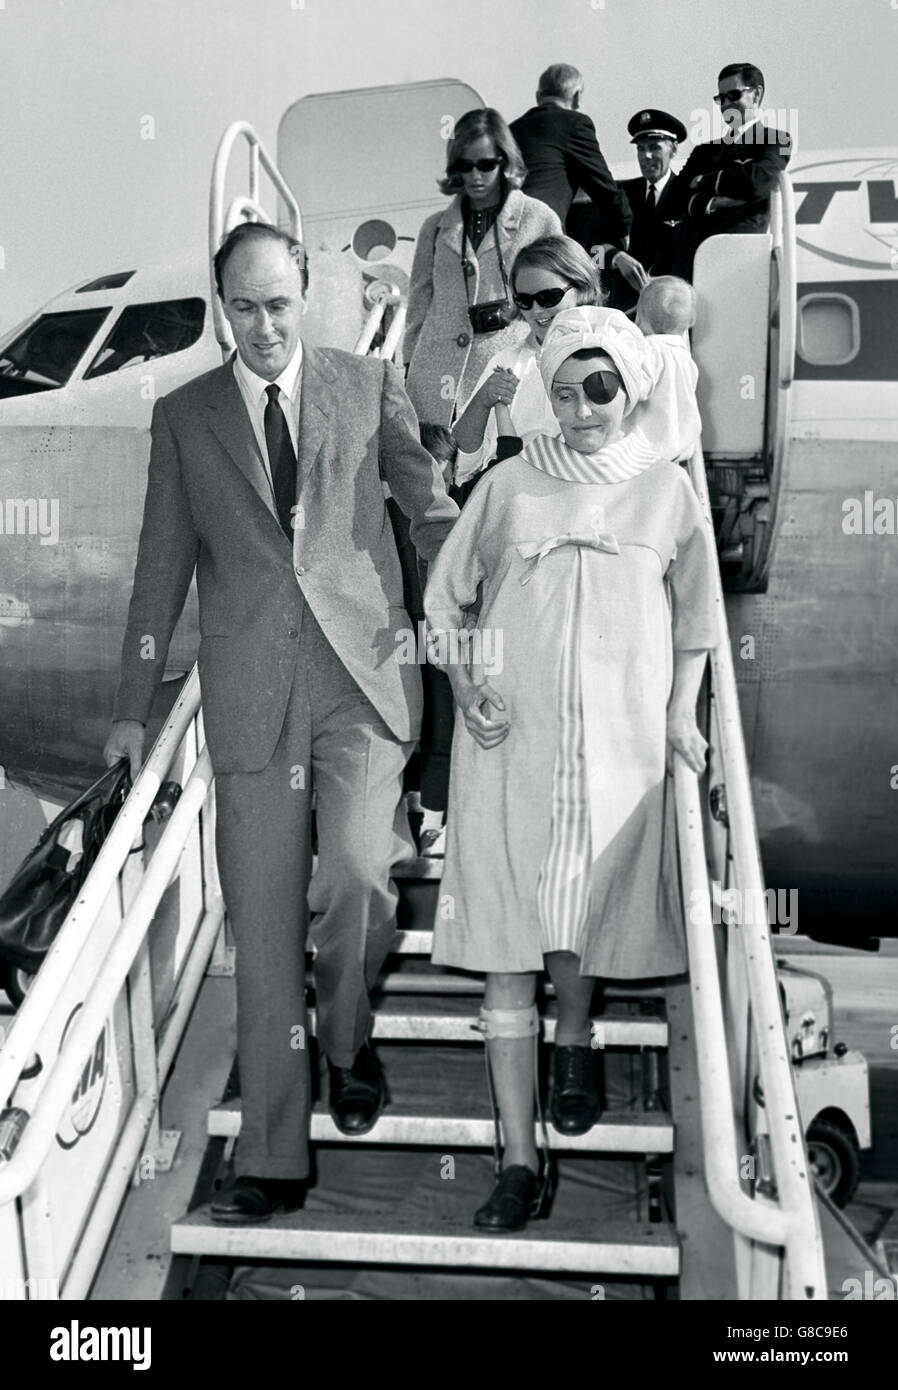 Zurück in Großbritannien ist die Schauspielerin Patricia Neal zu sehen, die von ihrem Mann, dem britischen Schriftsteller Roald Dahl, begleitet wird, als sie nach ihrer Rückkehr aus Hollywood die Stufen vom Flugzeug aus am Flughafen London hinuntergeht. Das Paar wurde von ihren drei Kindern, den Töchtern Tessa und Ophelia und dem Sohn Theo, begleitet. Stockfoto